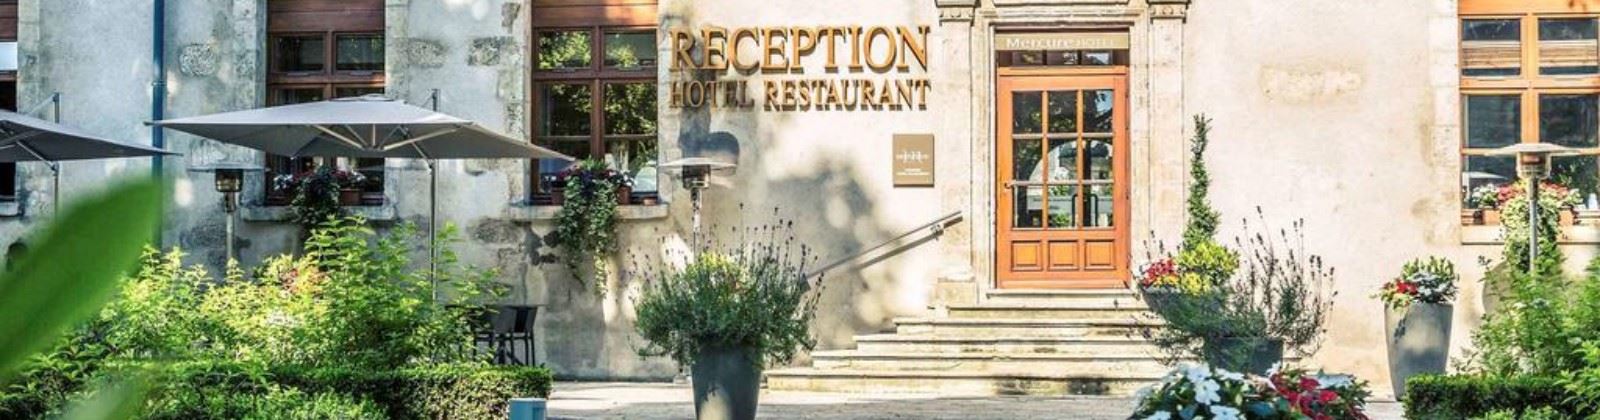 OLEVENE image - mercure-bourges-hotel-de-bourbon-olevene-restaurant-meeting-booking-